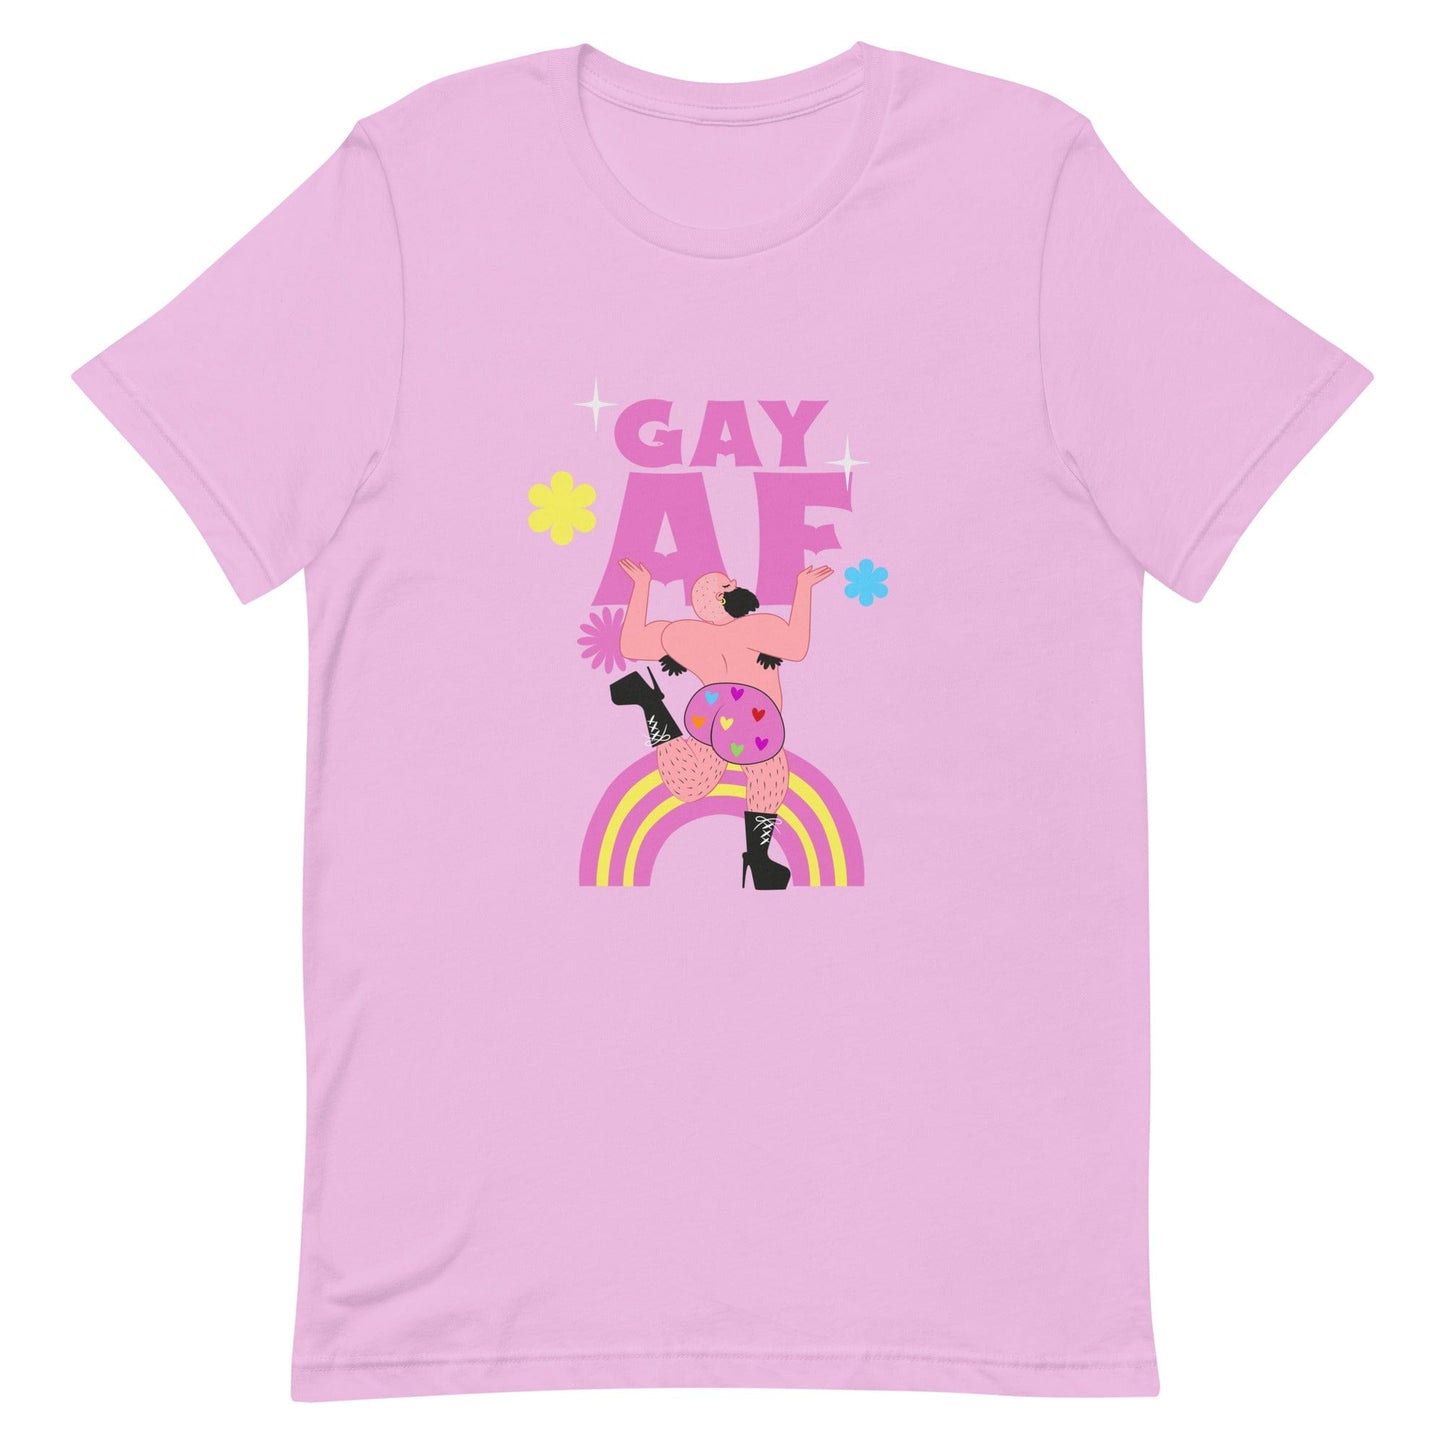 queer-gay-af-lilac-t-shirt-lgbtq-by-feminist-define